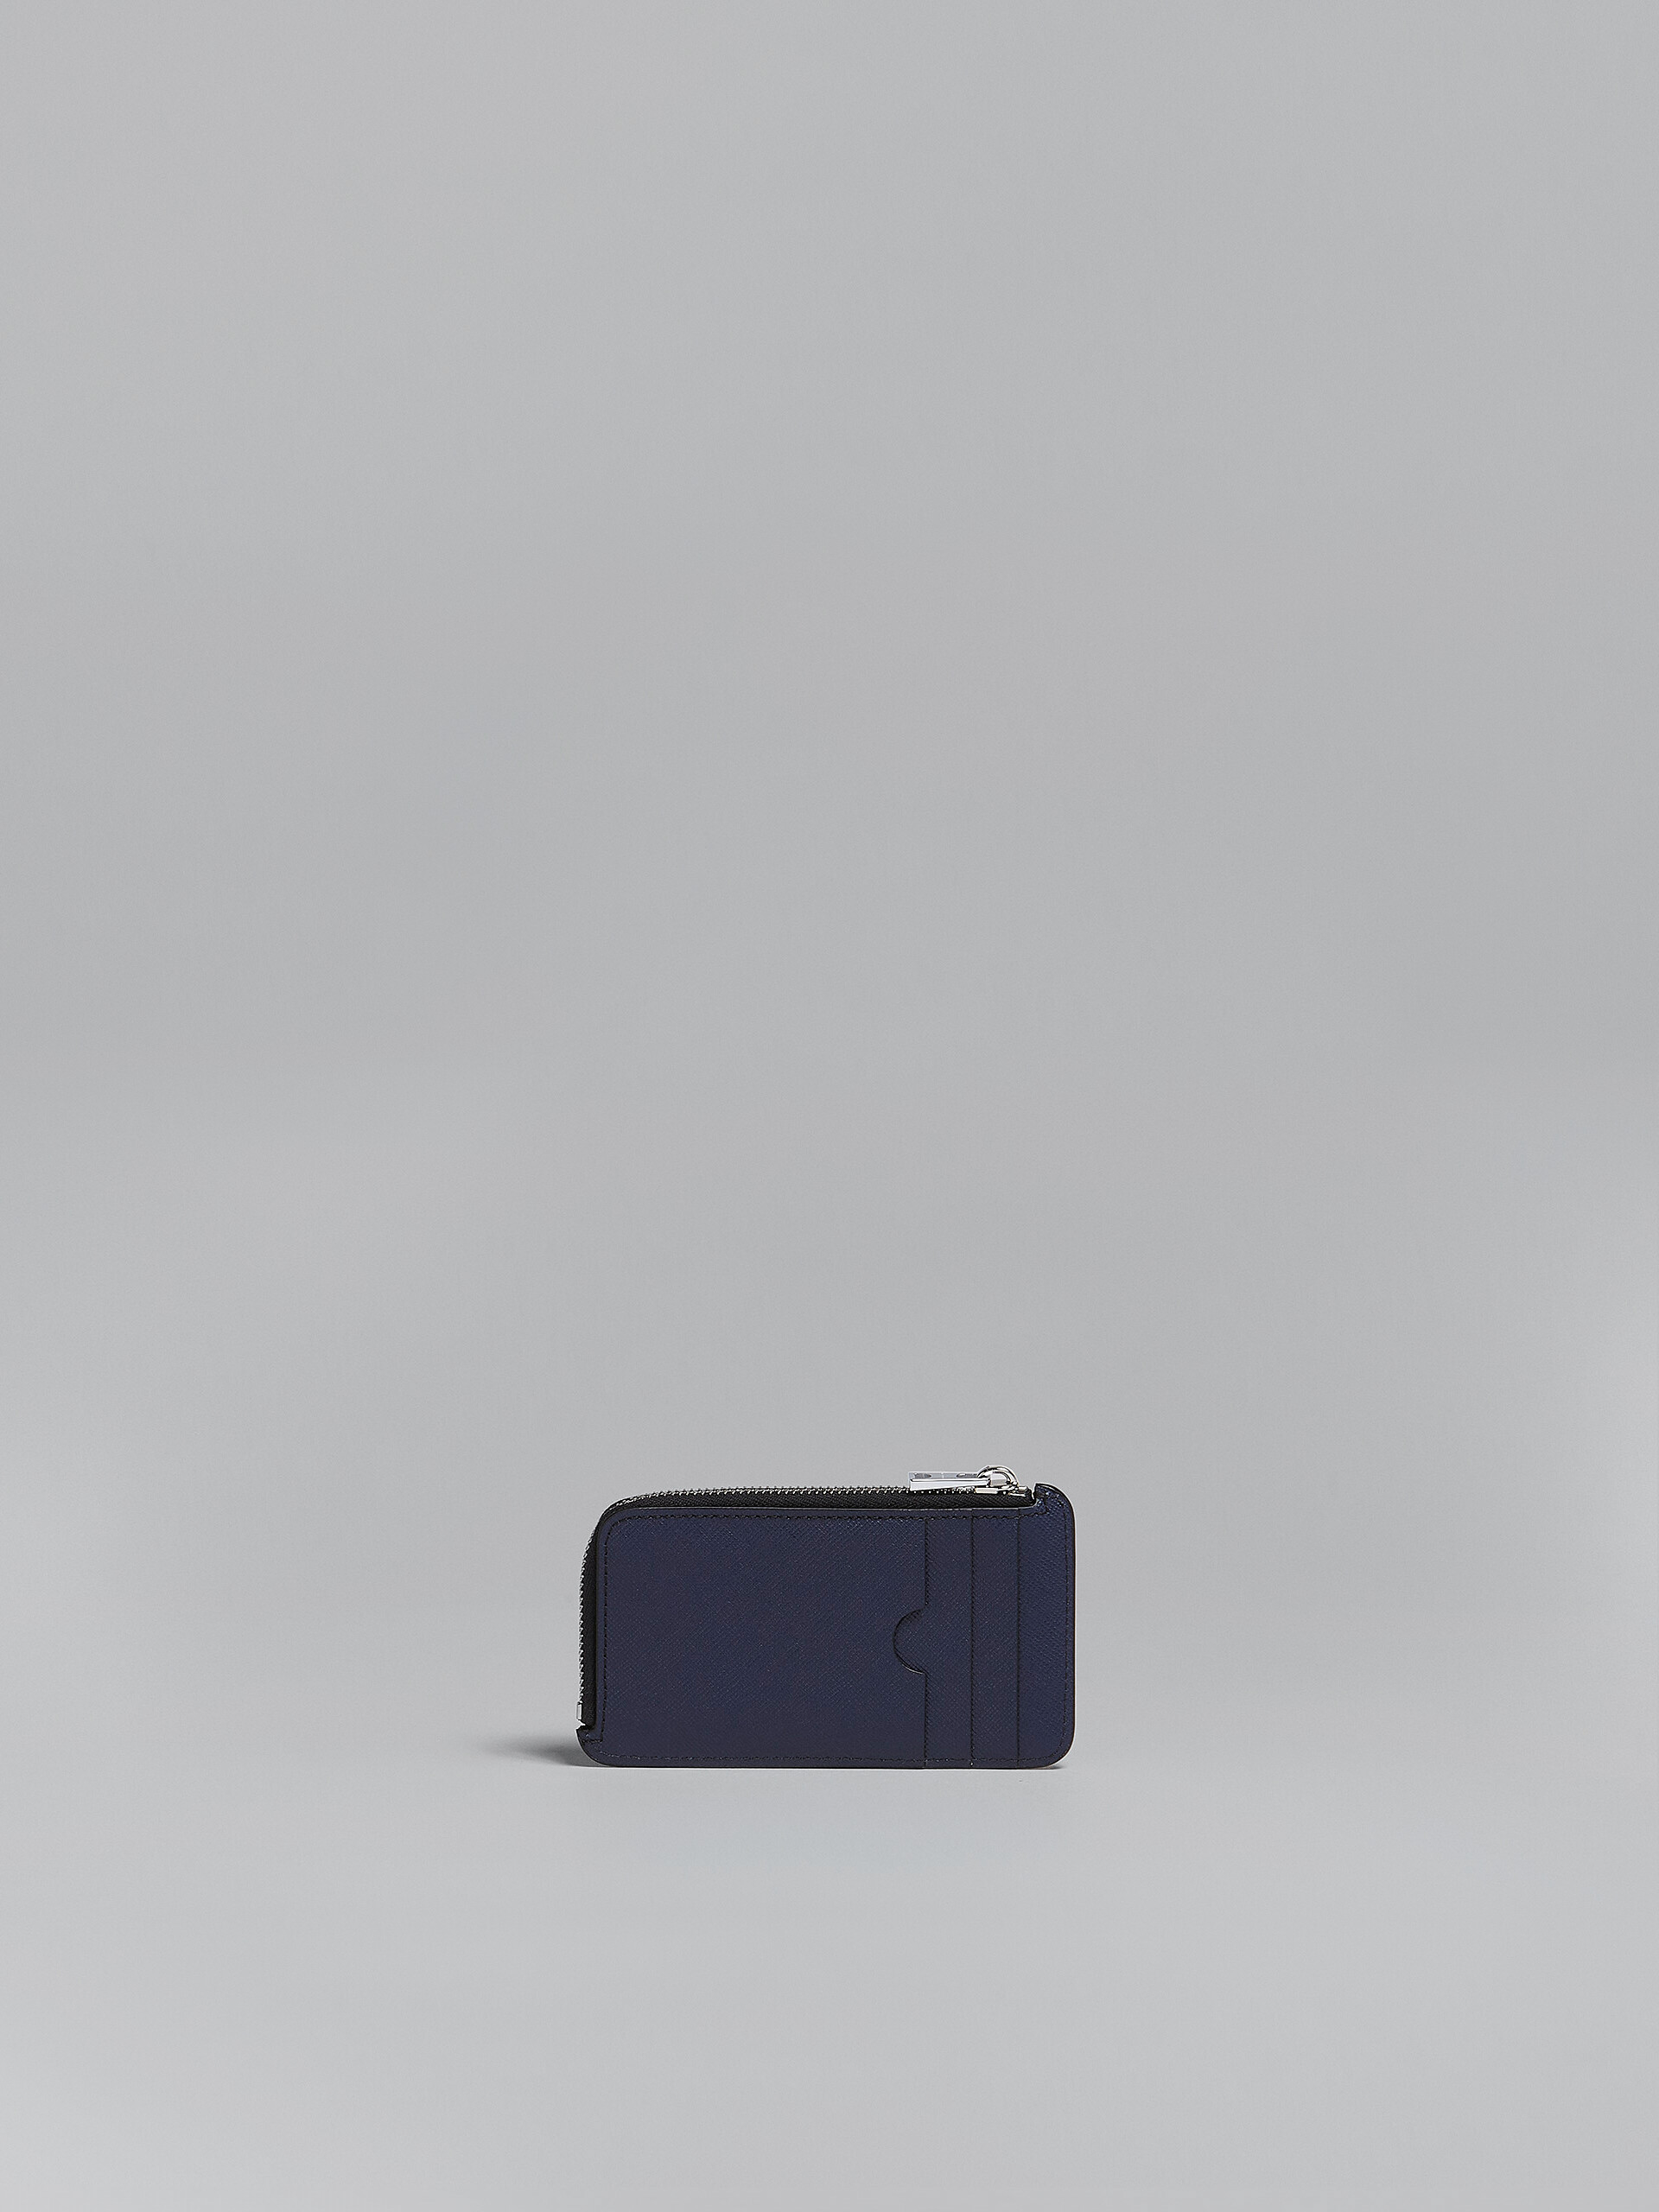 ブルーとブラック サフィアーノレザー製 ジップアラウンドカードケース - 財布 - Image 3